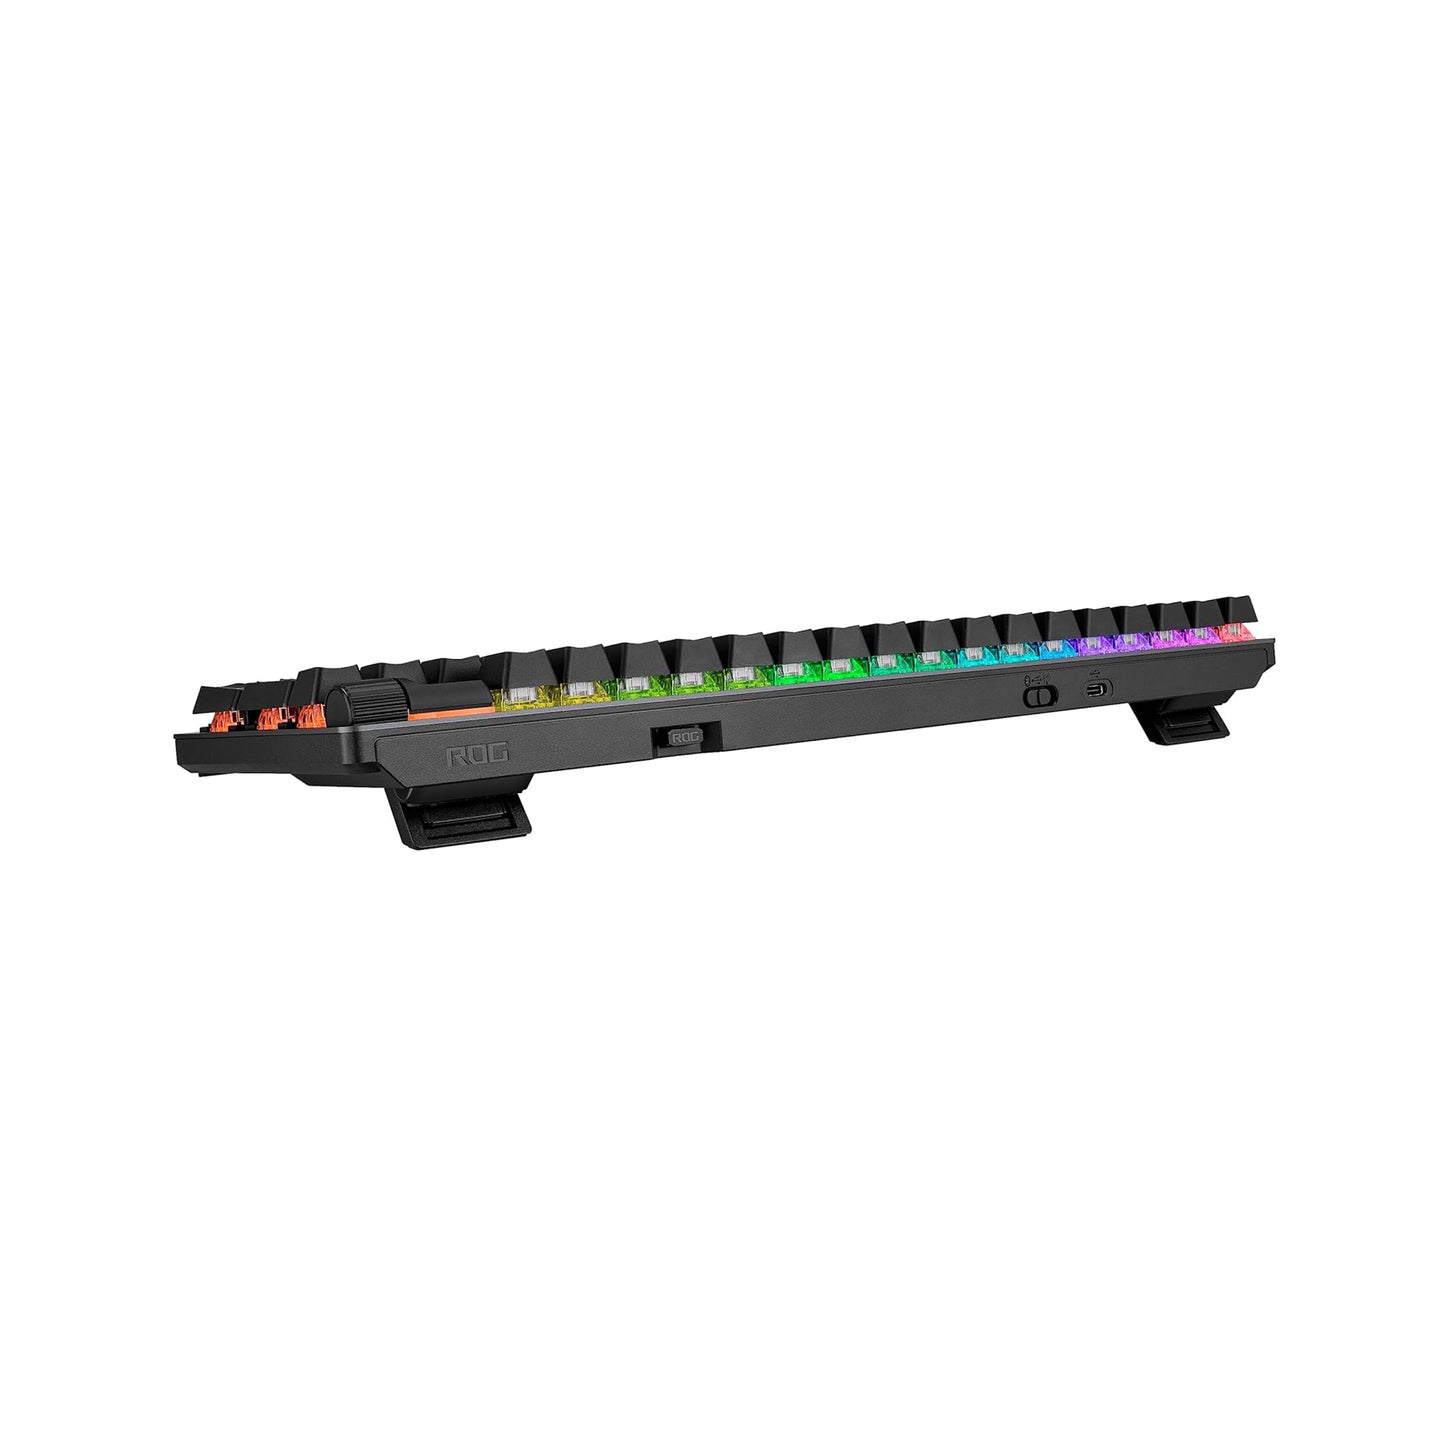 لوحة مفاتيح الألعاب اللاسلكية ASUS ROG Strix Scope II 96، اتصال ثلاثي الأوضاع، رغوة مخففة ووسادات ترطيب التبديل، مفاتيح ROG NX Storm مسبقة التشحيم قابلة للتبديل السريع، أغطية مفاتيح PBT، RGB-أسود 